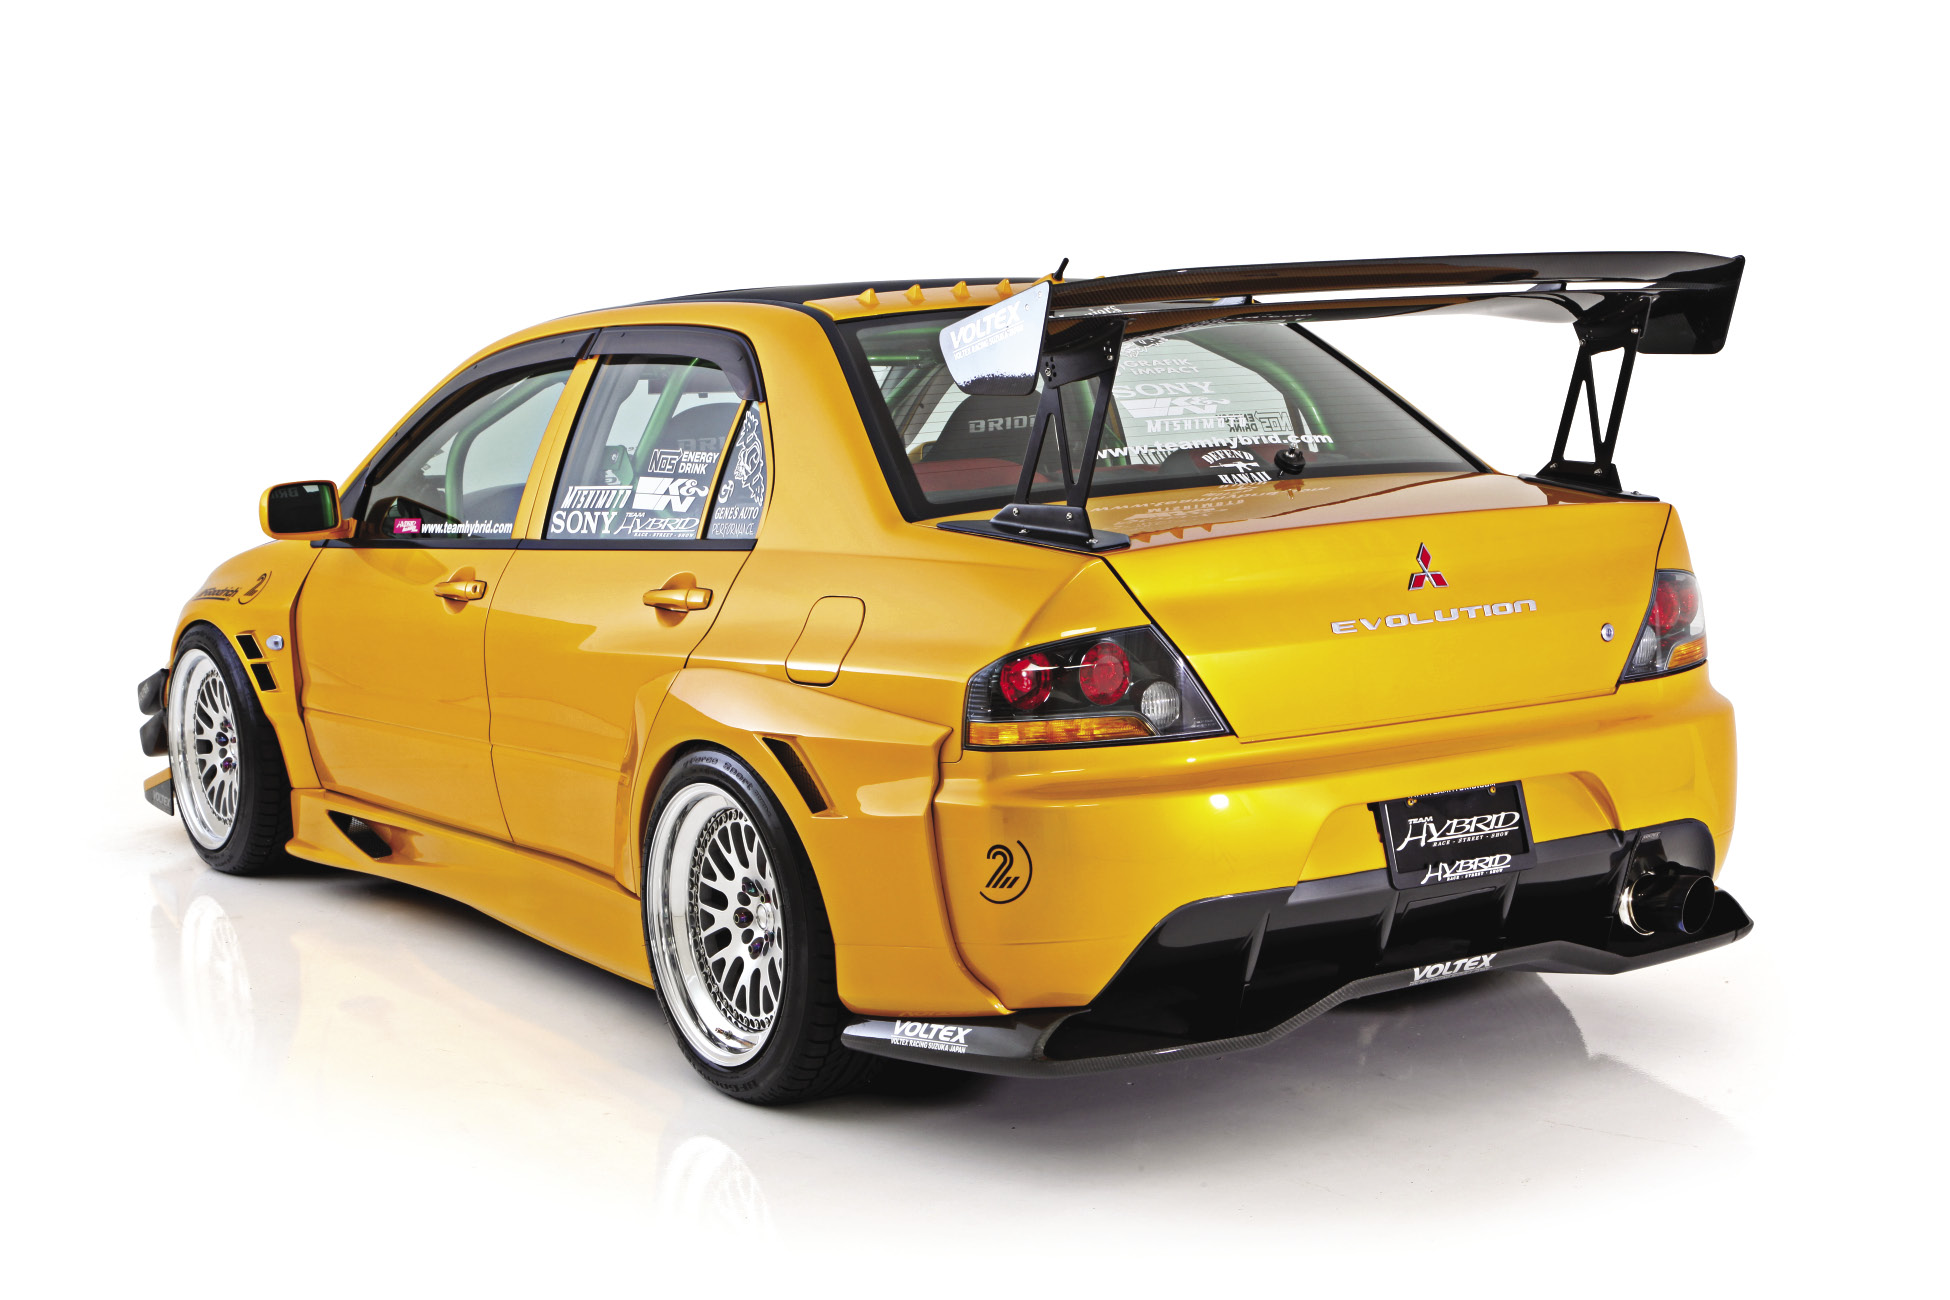 2005 Mitsubishi Lancer Evolution IX